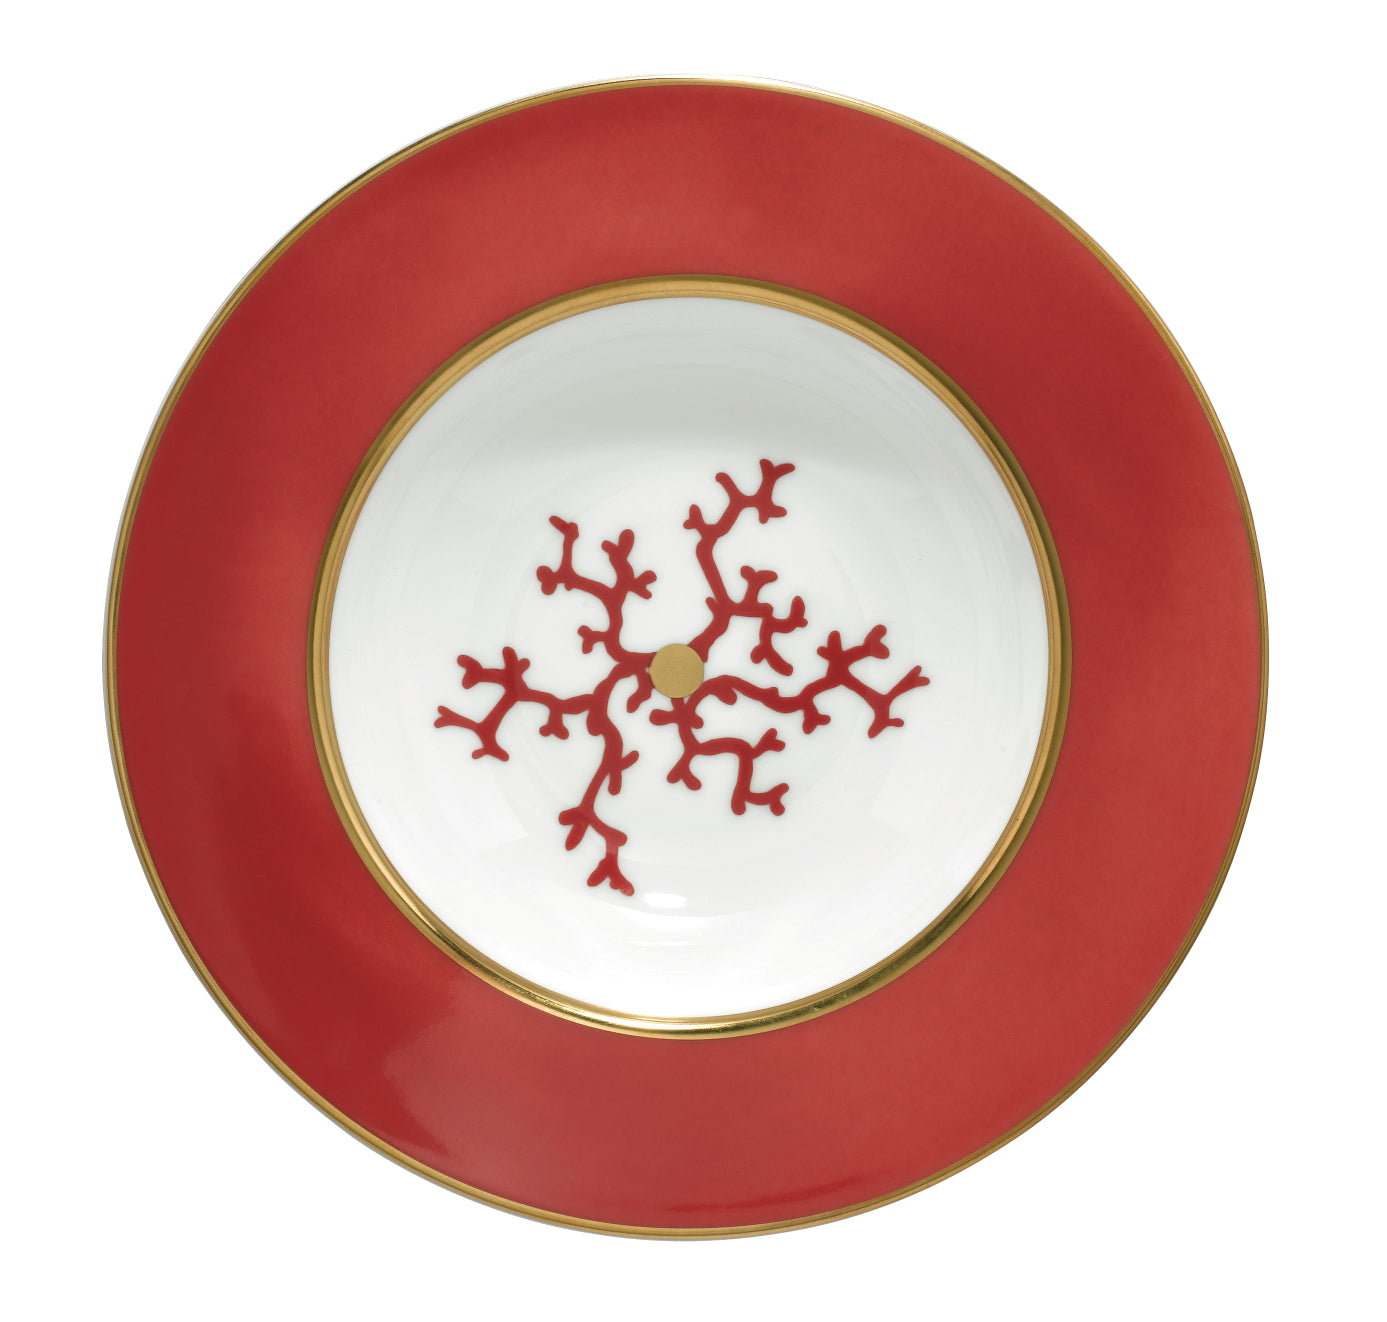 Cristobal Red - Rim Soup Plate 8.3 in 7.4 oz